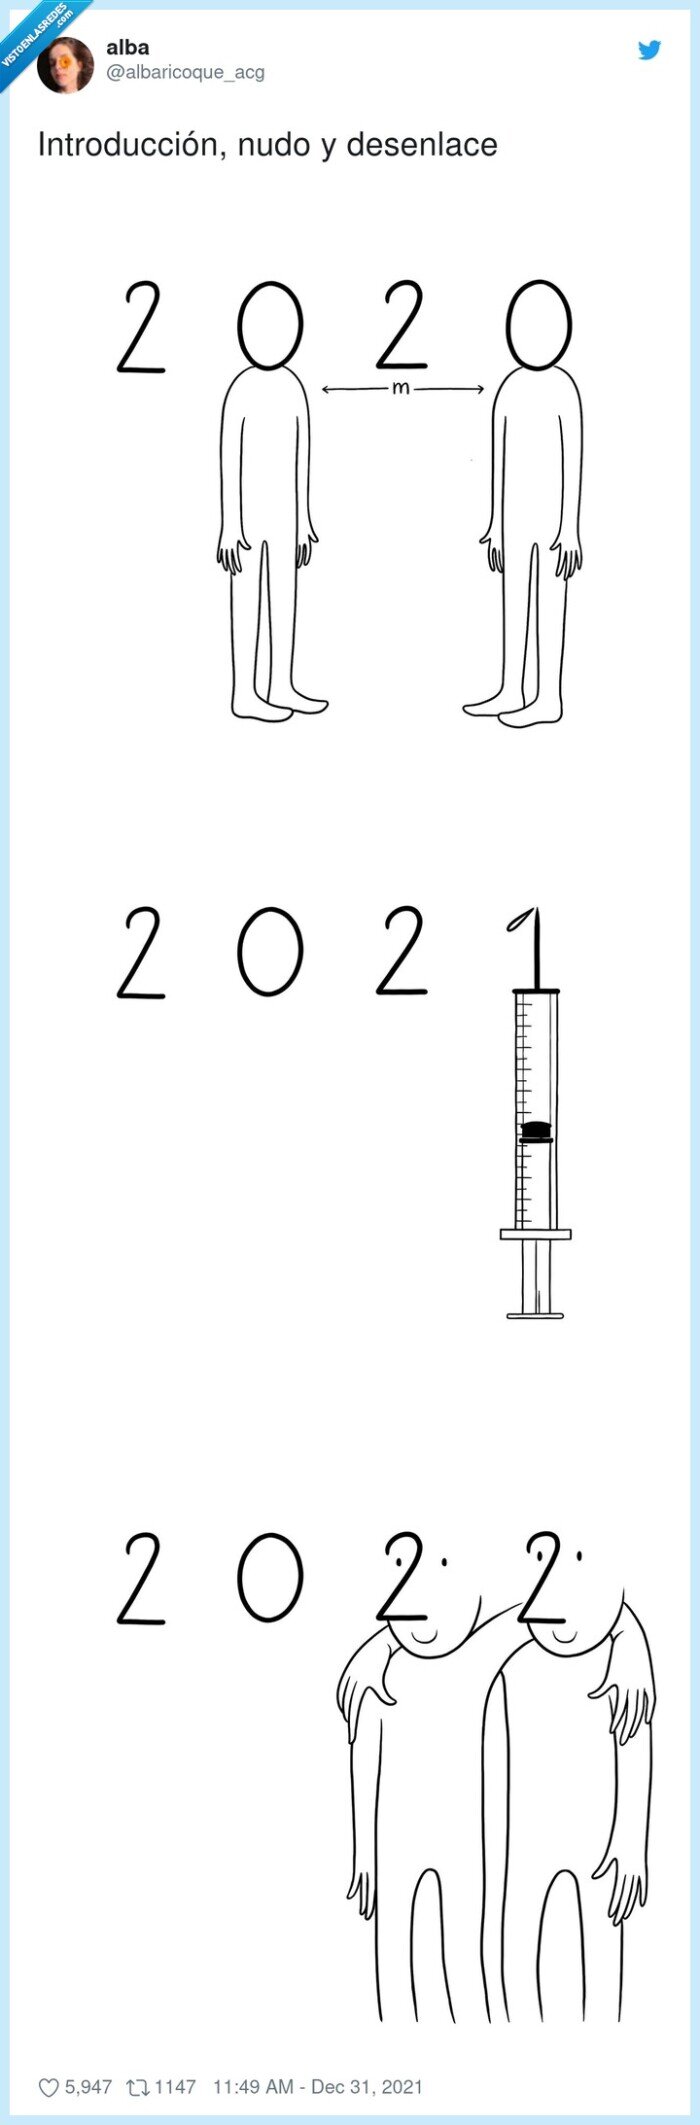 introducción,desenlace,nudo,2022